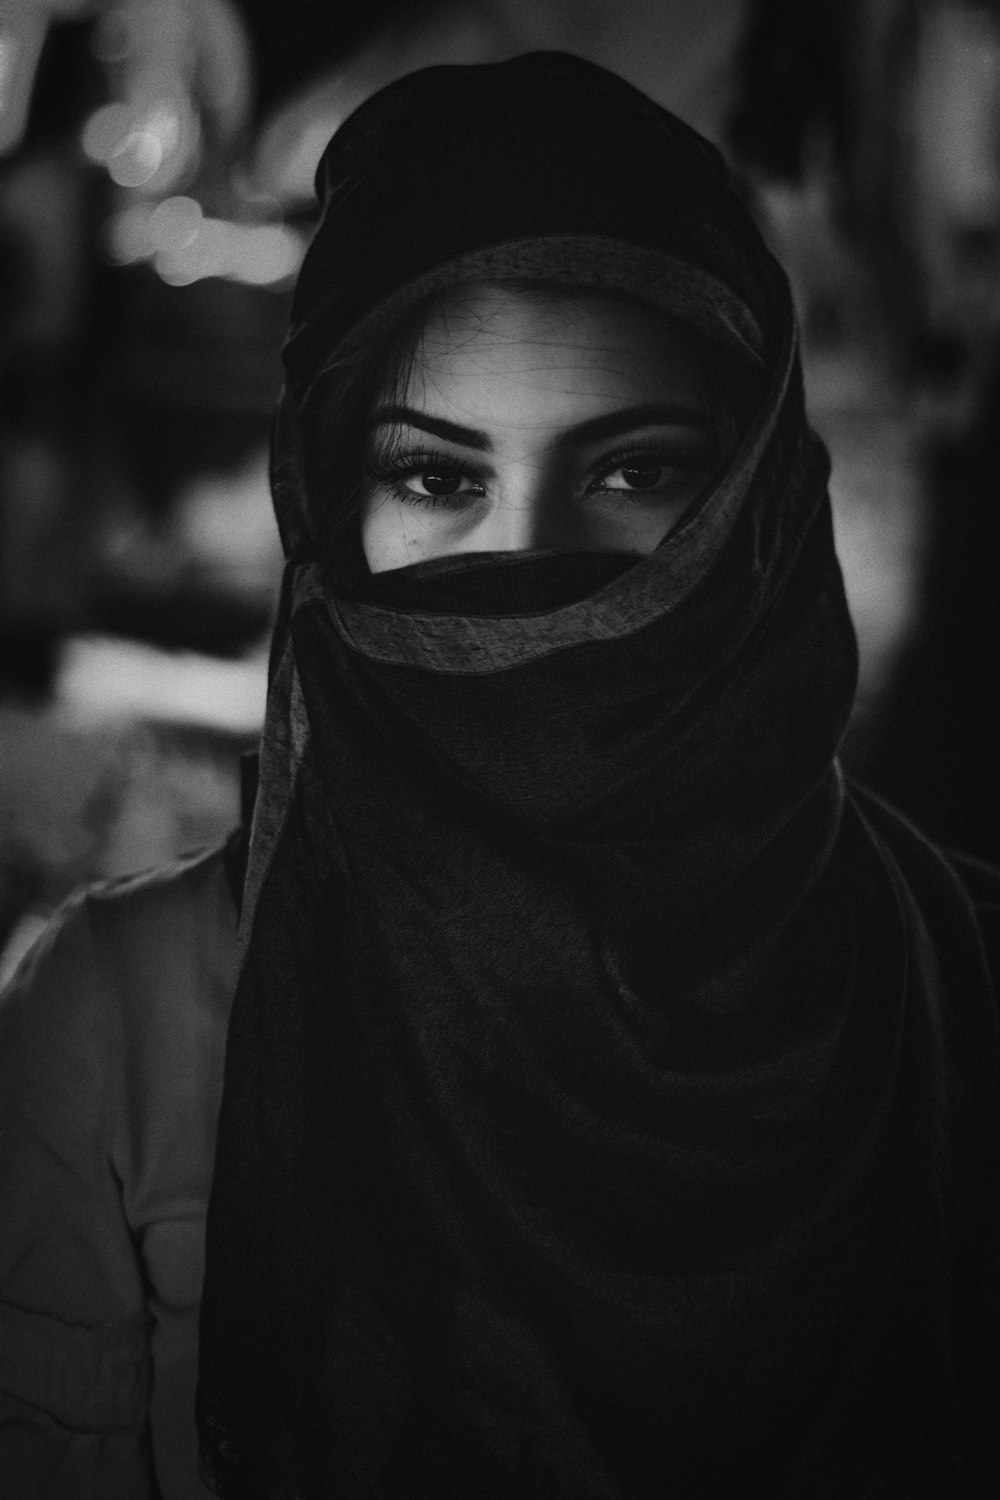 foto in scala di grigi di donna che indossa l'hijab